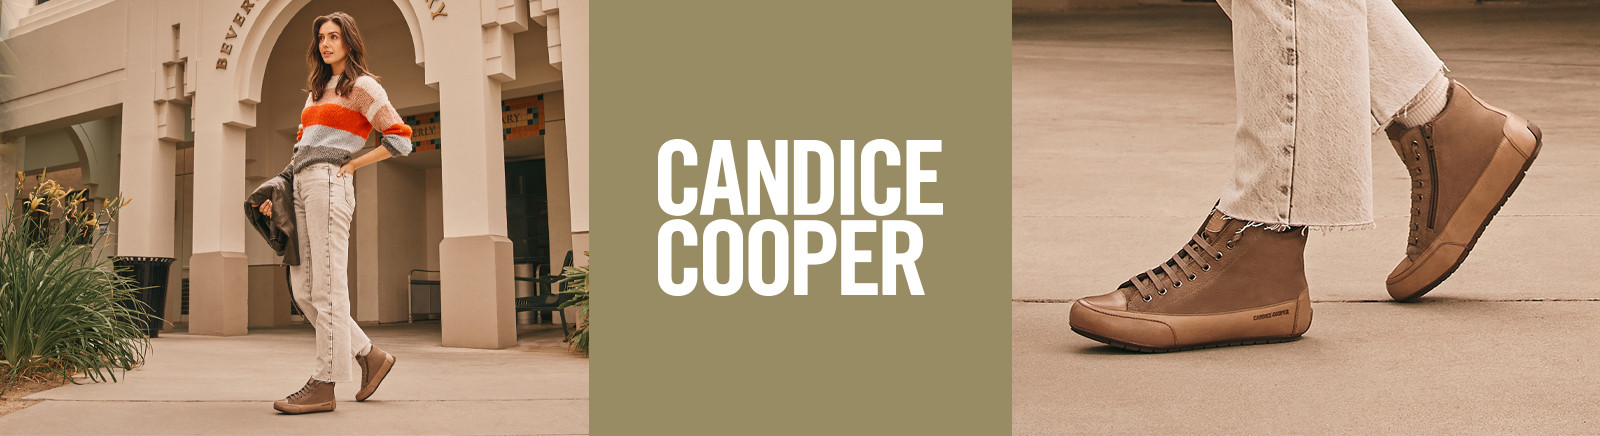 Juppen: Candice Cooper Boots für Damen kaufen online shoppen